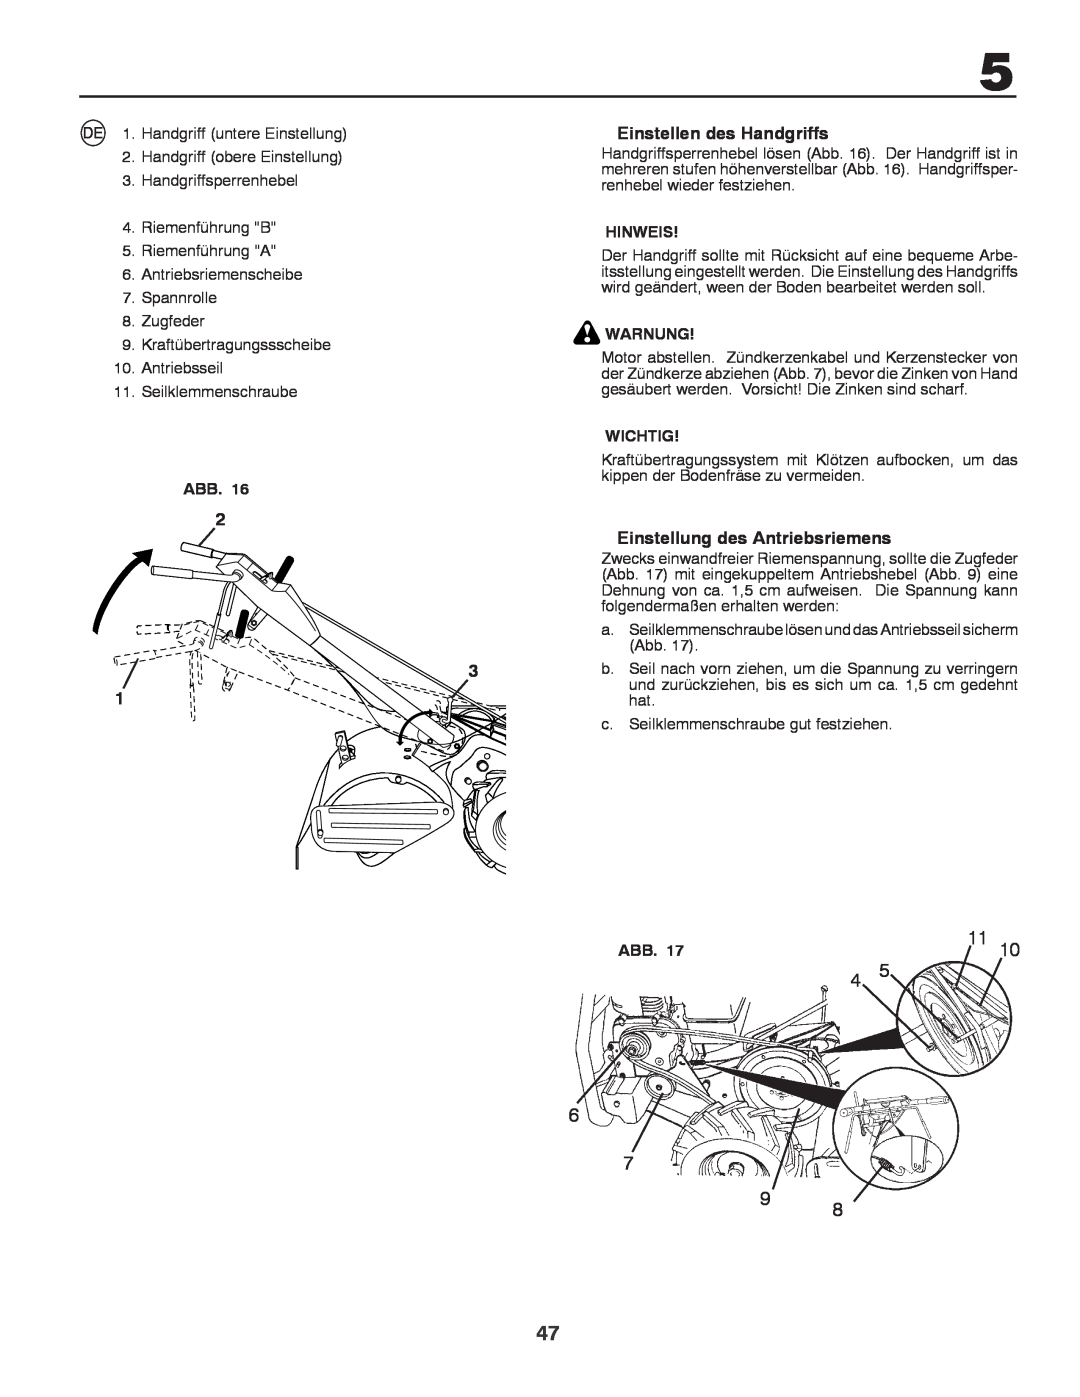 Husqvarna CRT81 instruction manual Einstellen des Handgriffs, Einstellung des Antriebsriemens, Hinweis, Warnung, Wichtig 